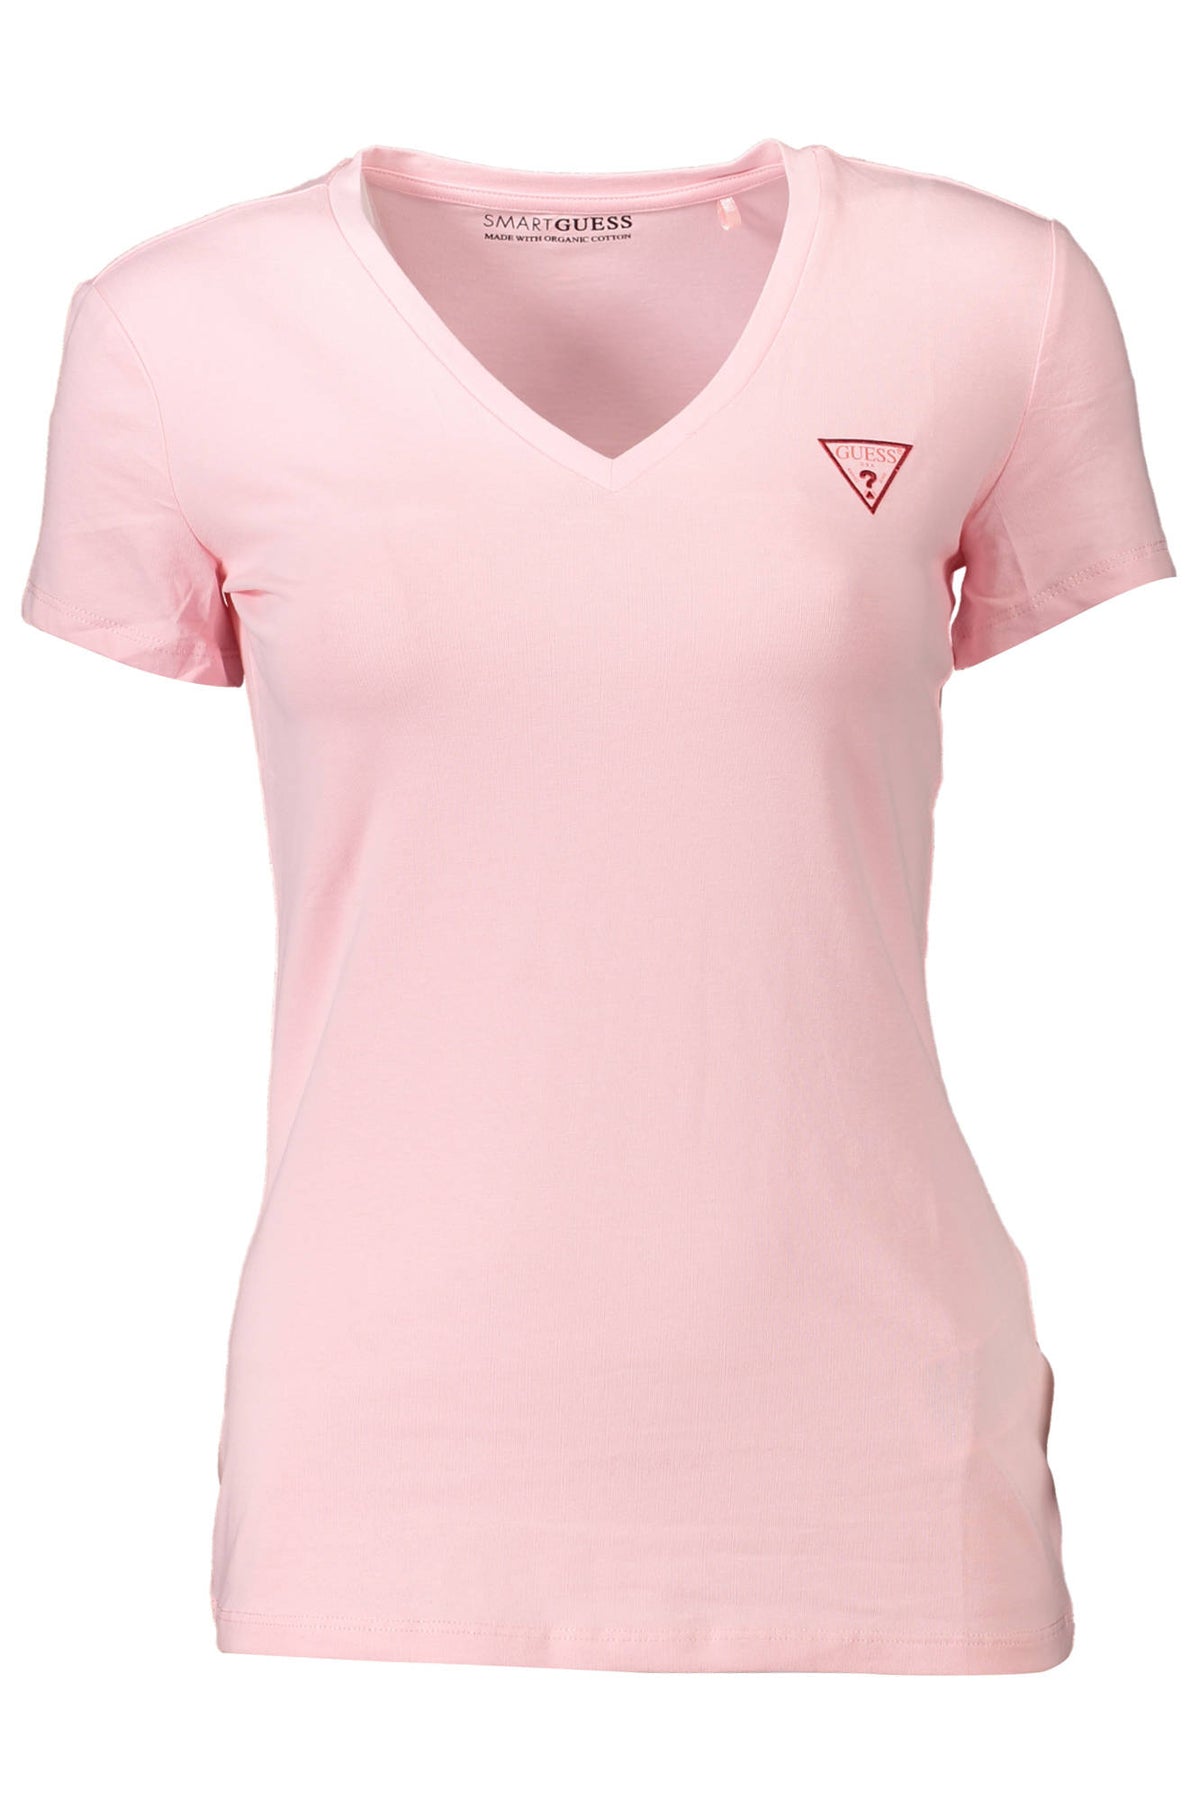 GUESS JEANS Damen T-Shirt Shirt Sweatshirt Oberteil mit V-Ausschnitt, kurzärmlig